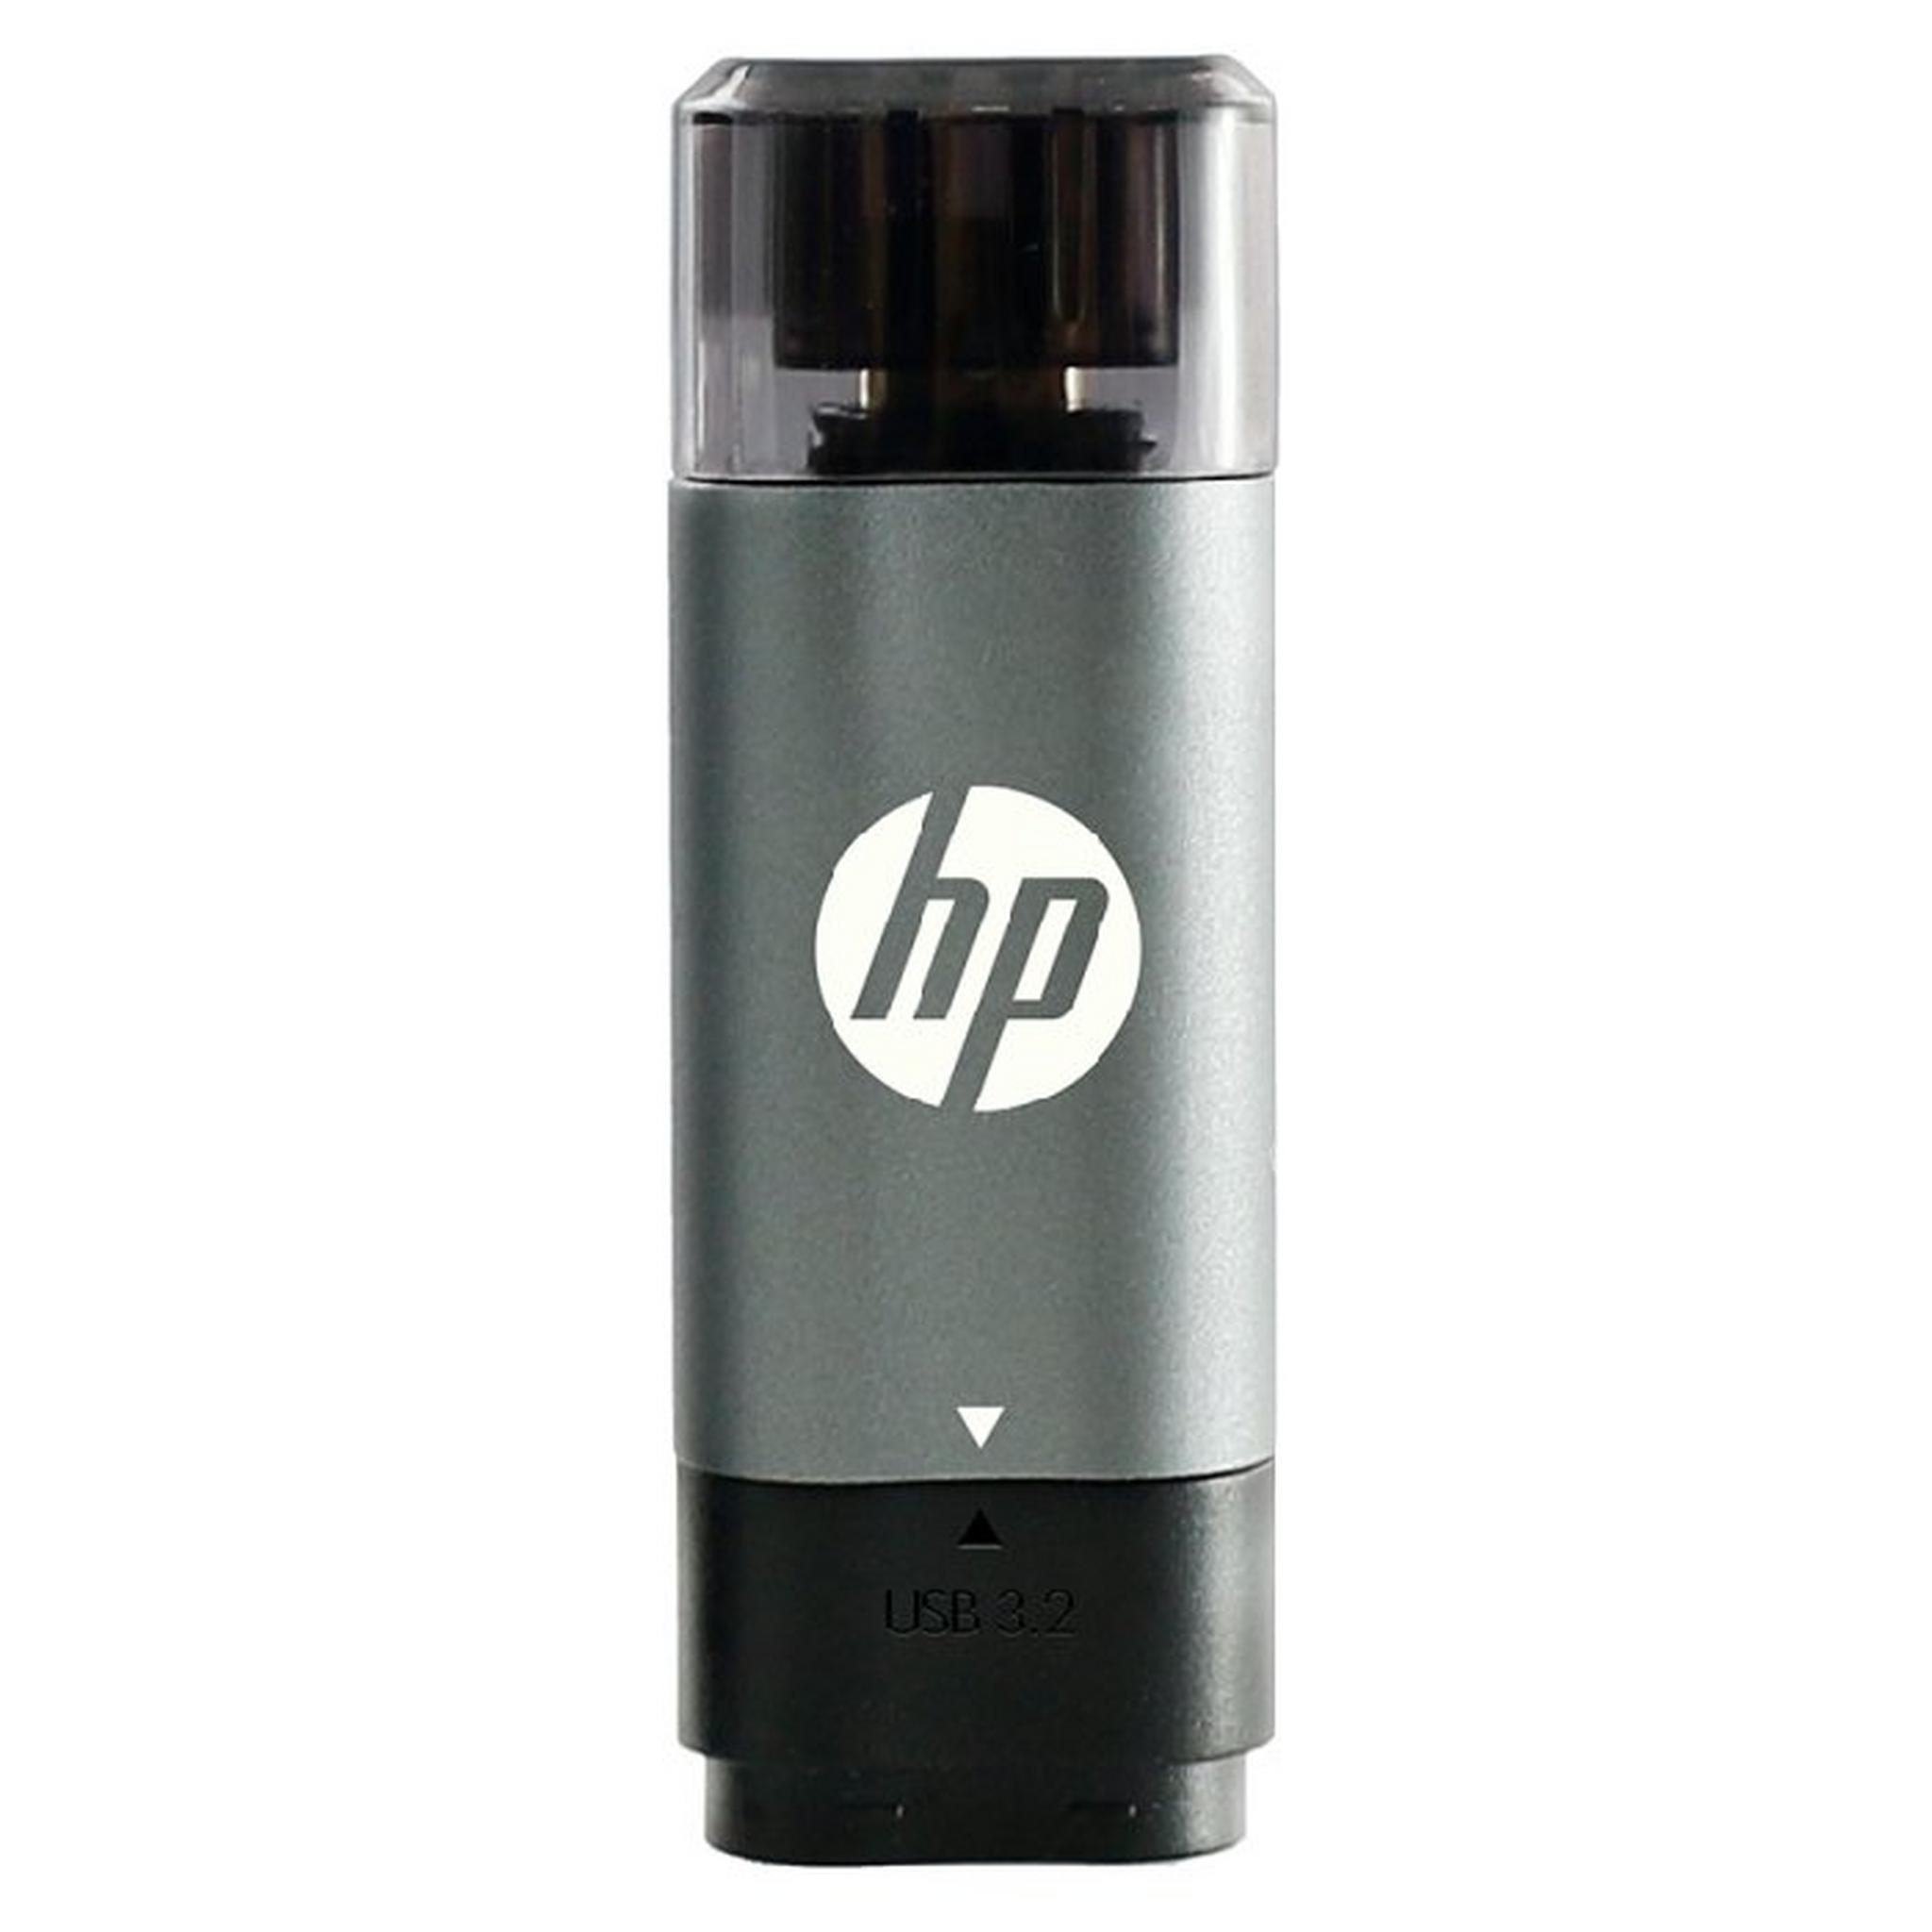 HP 3.2 64 GB USB-C Flash Drive (5600C)